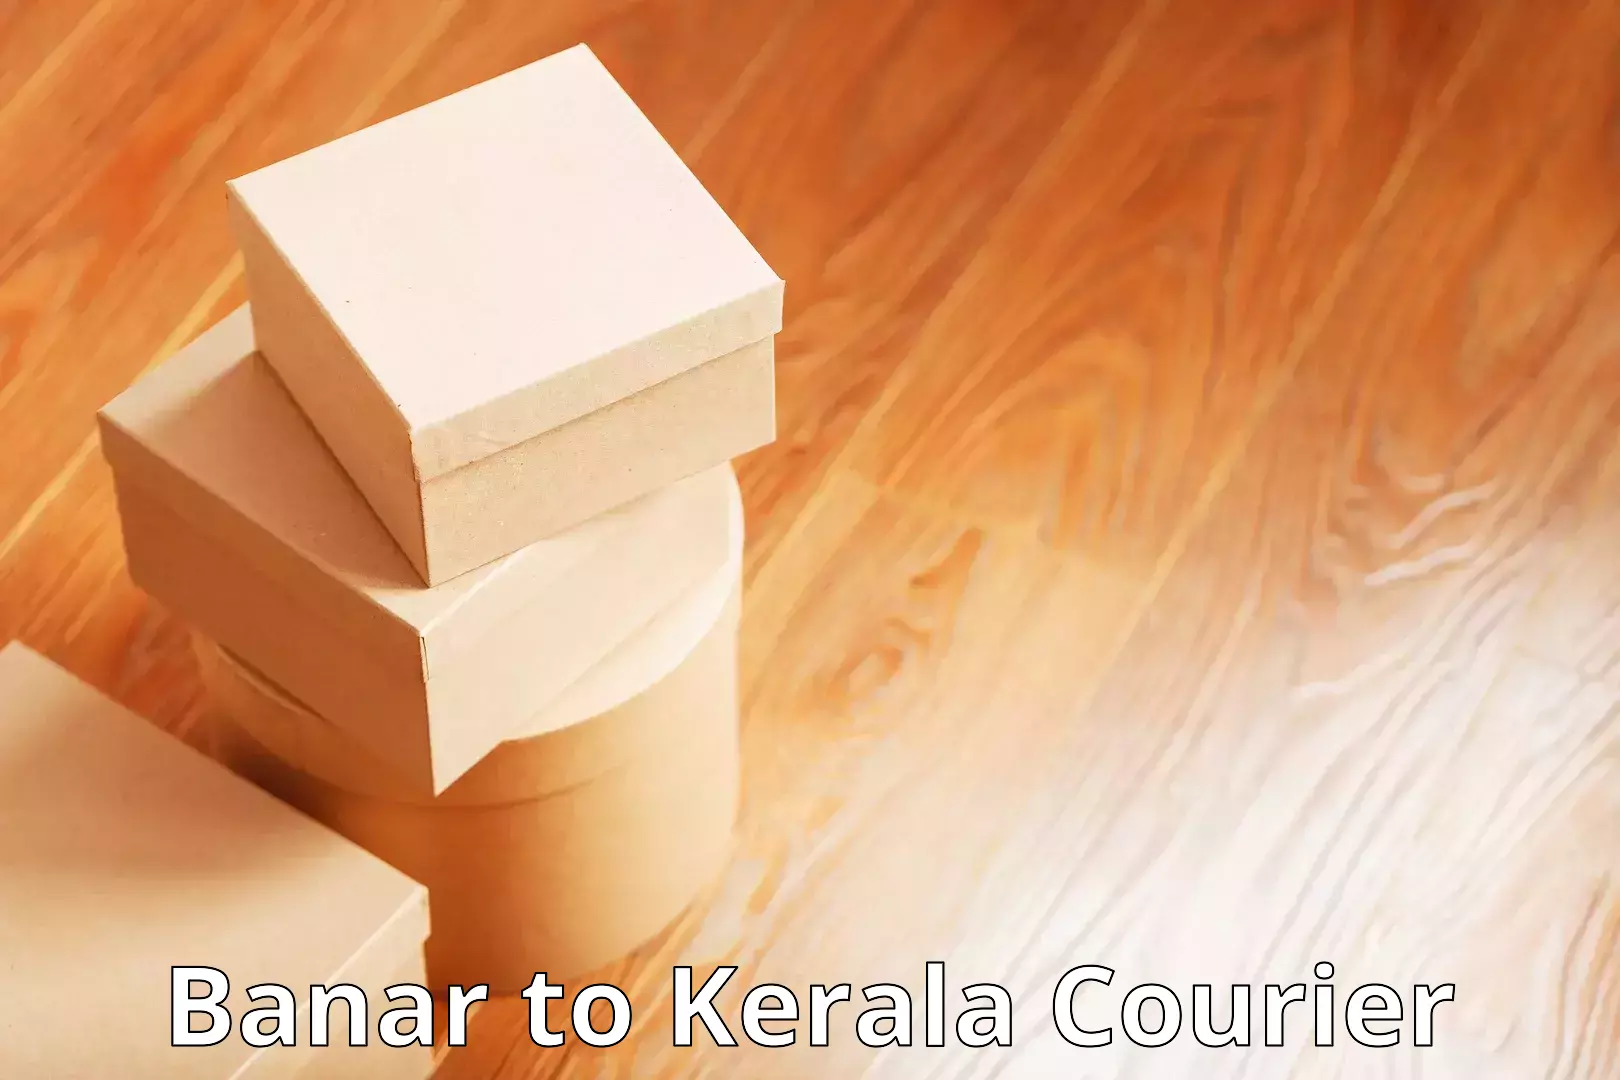 Customer-centric shipping Banar to Kerala